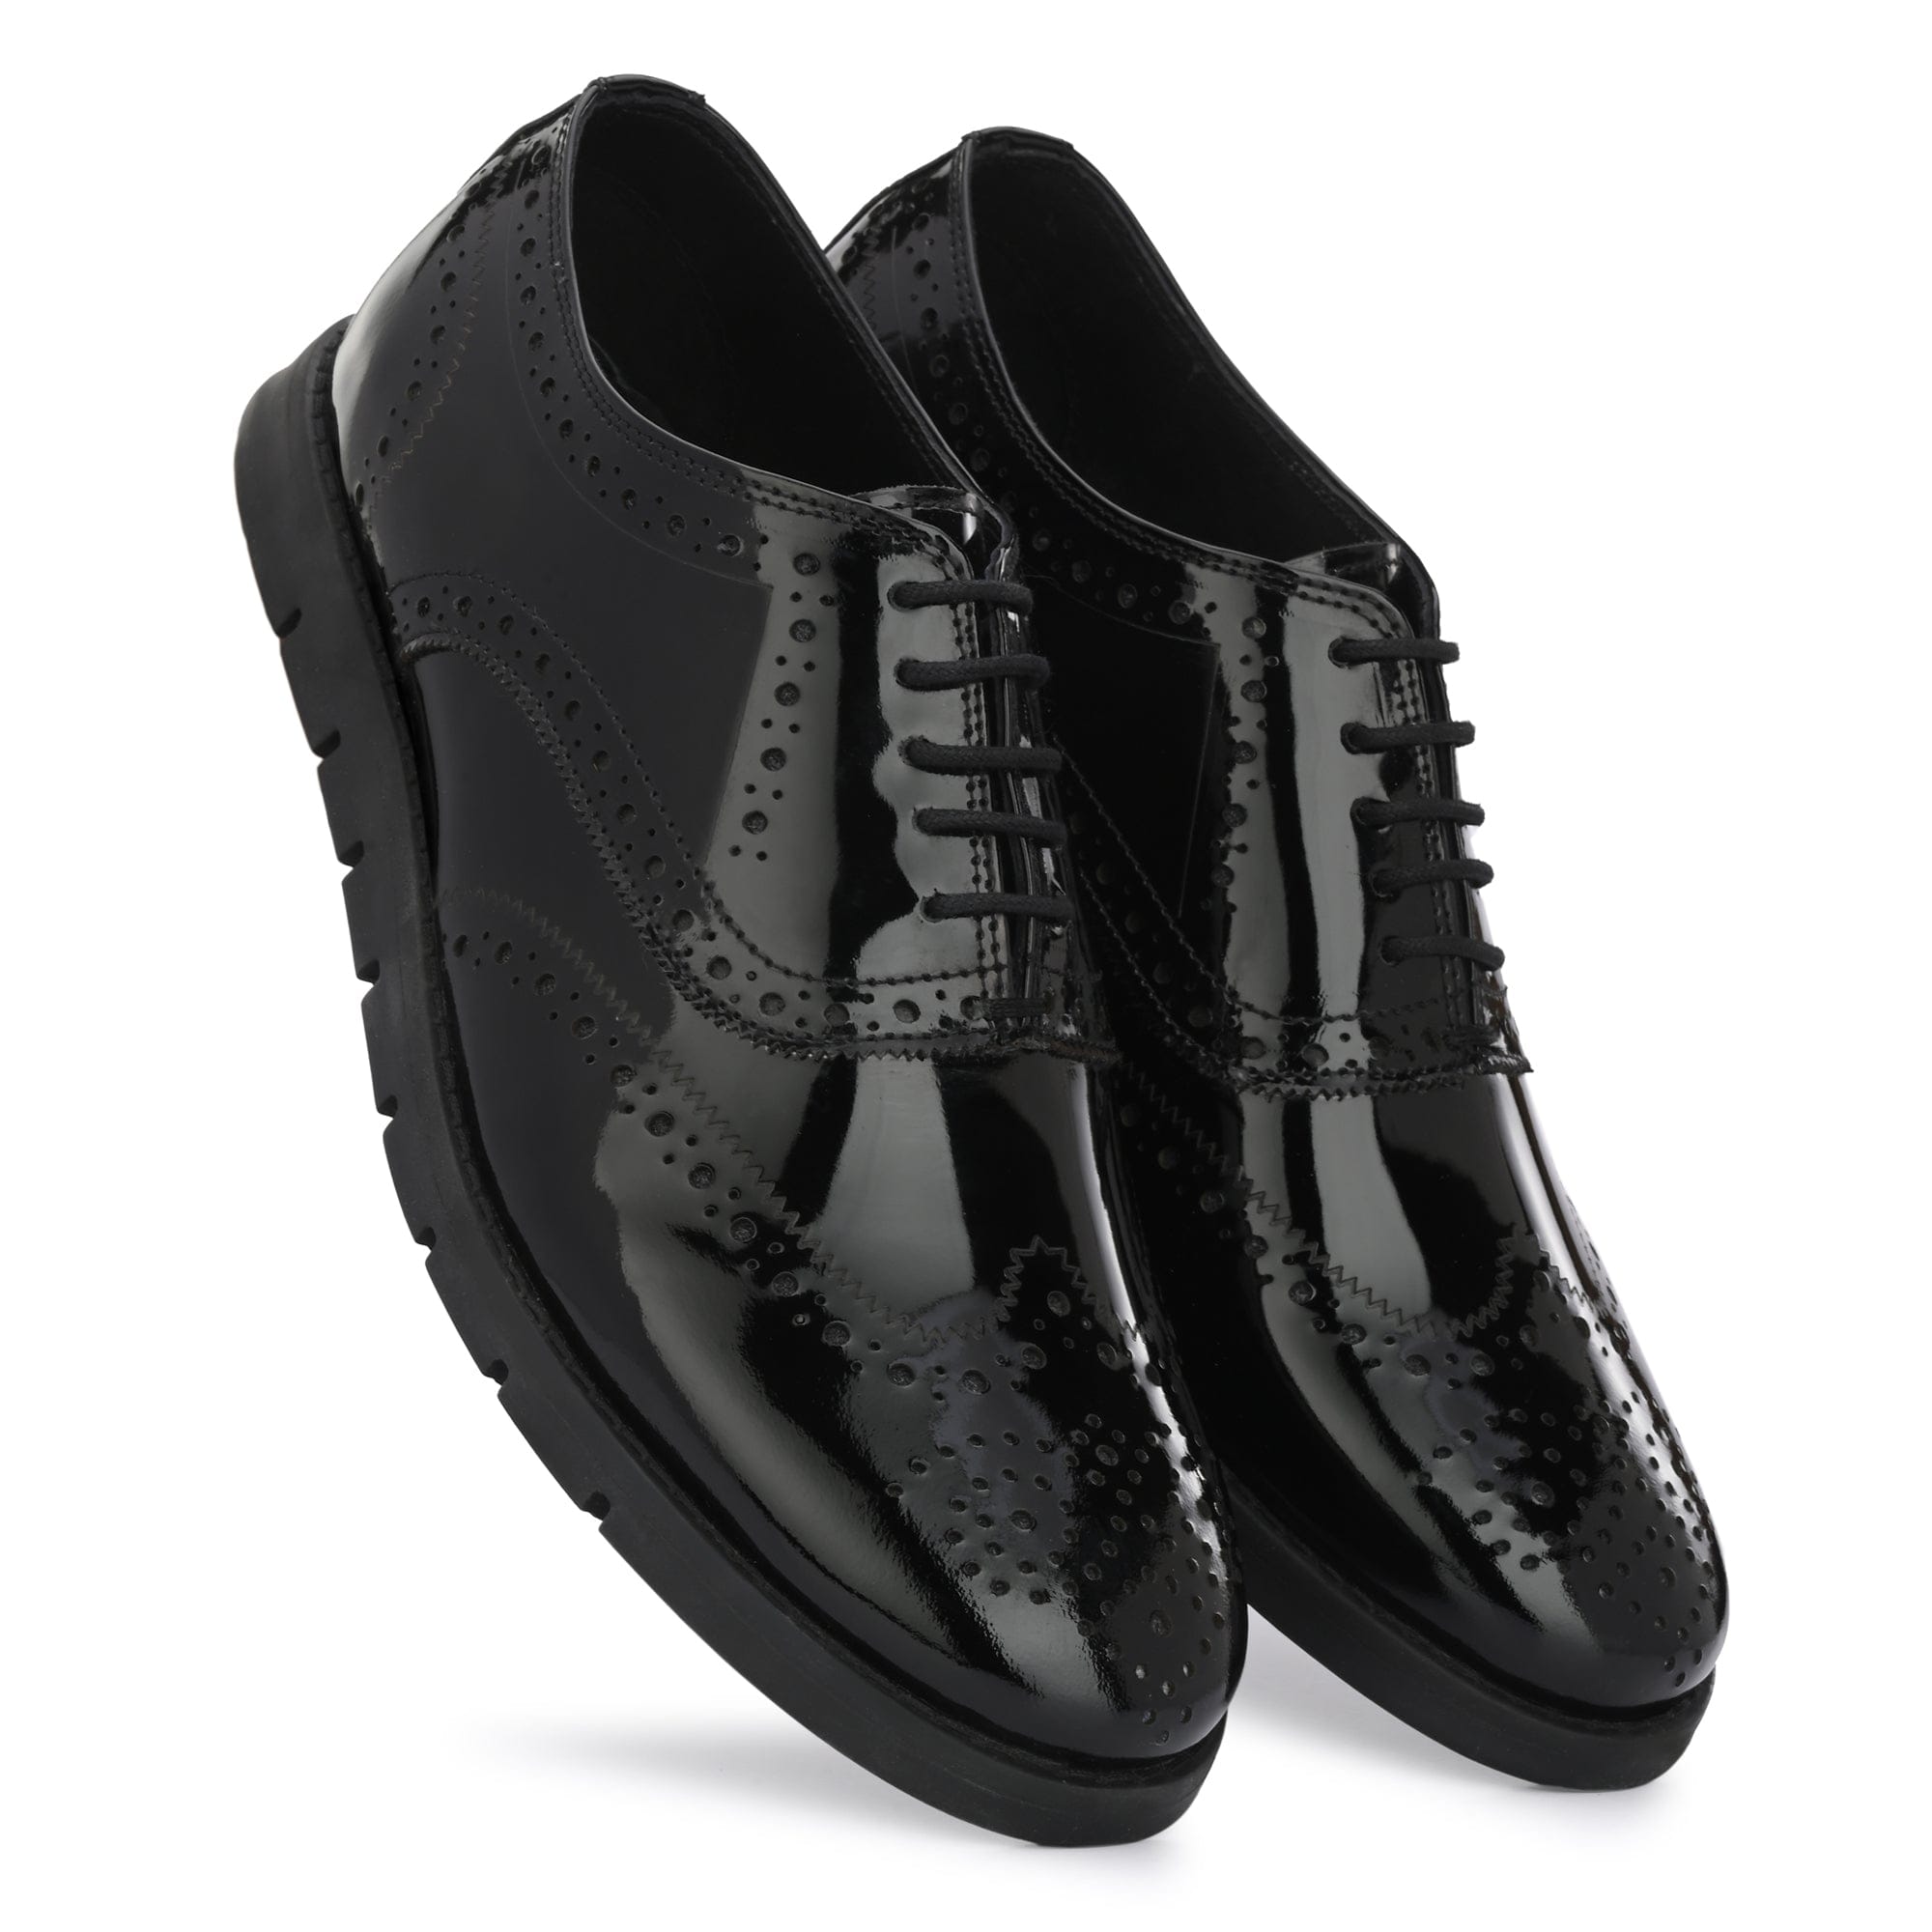 Black Tuxedo Shoes Patent Leather Wedding Shoes for Men Cap Toe Lace u